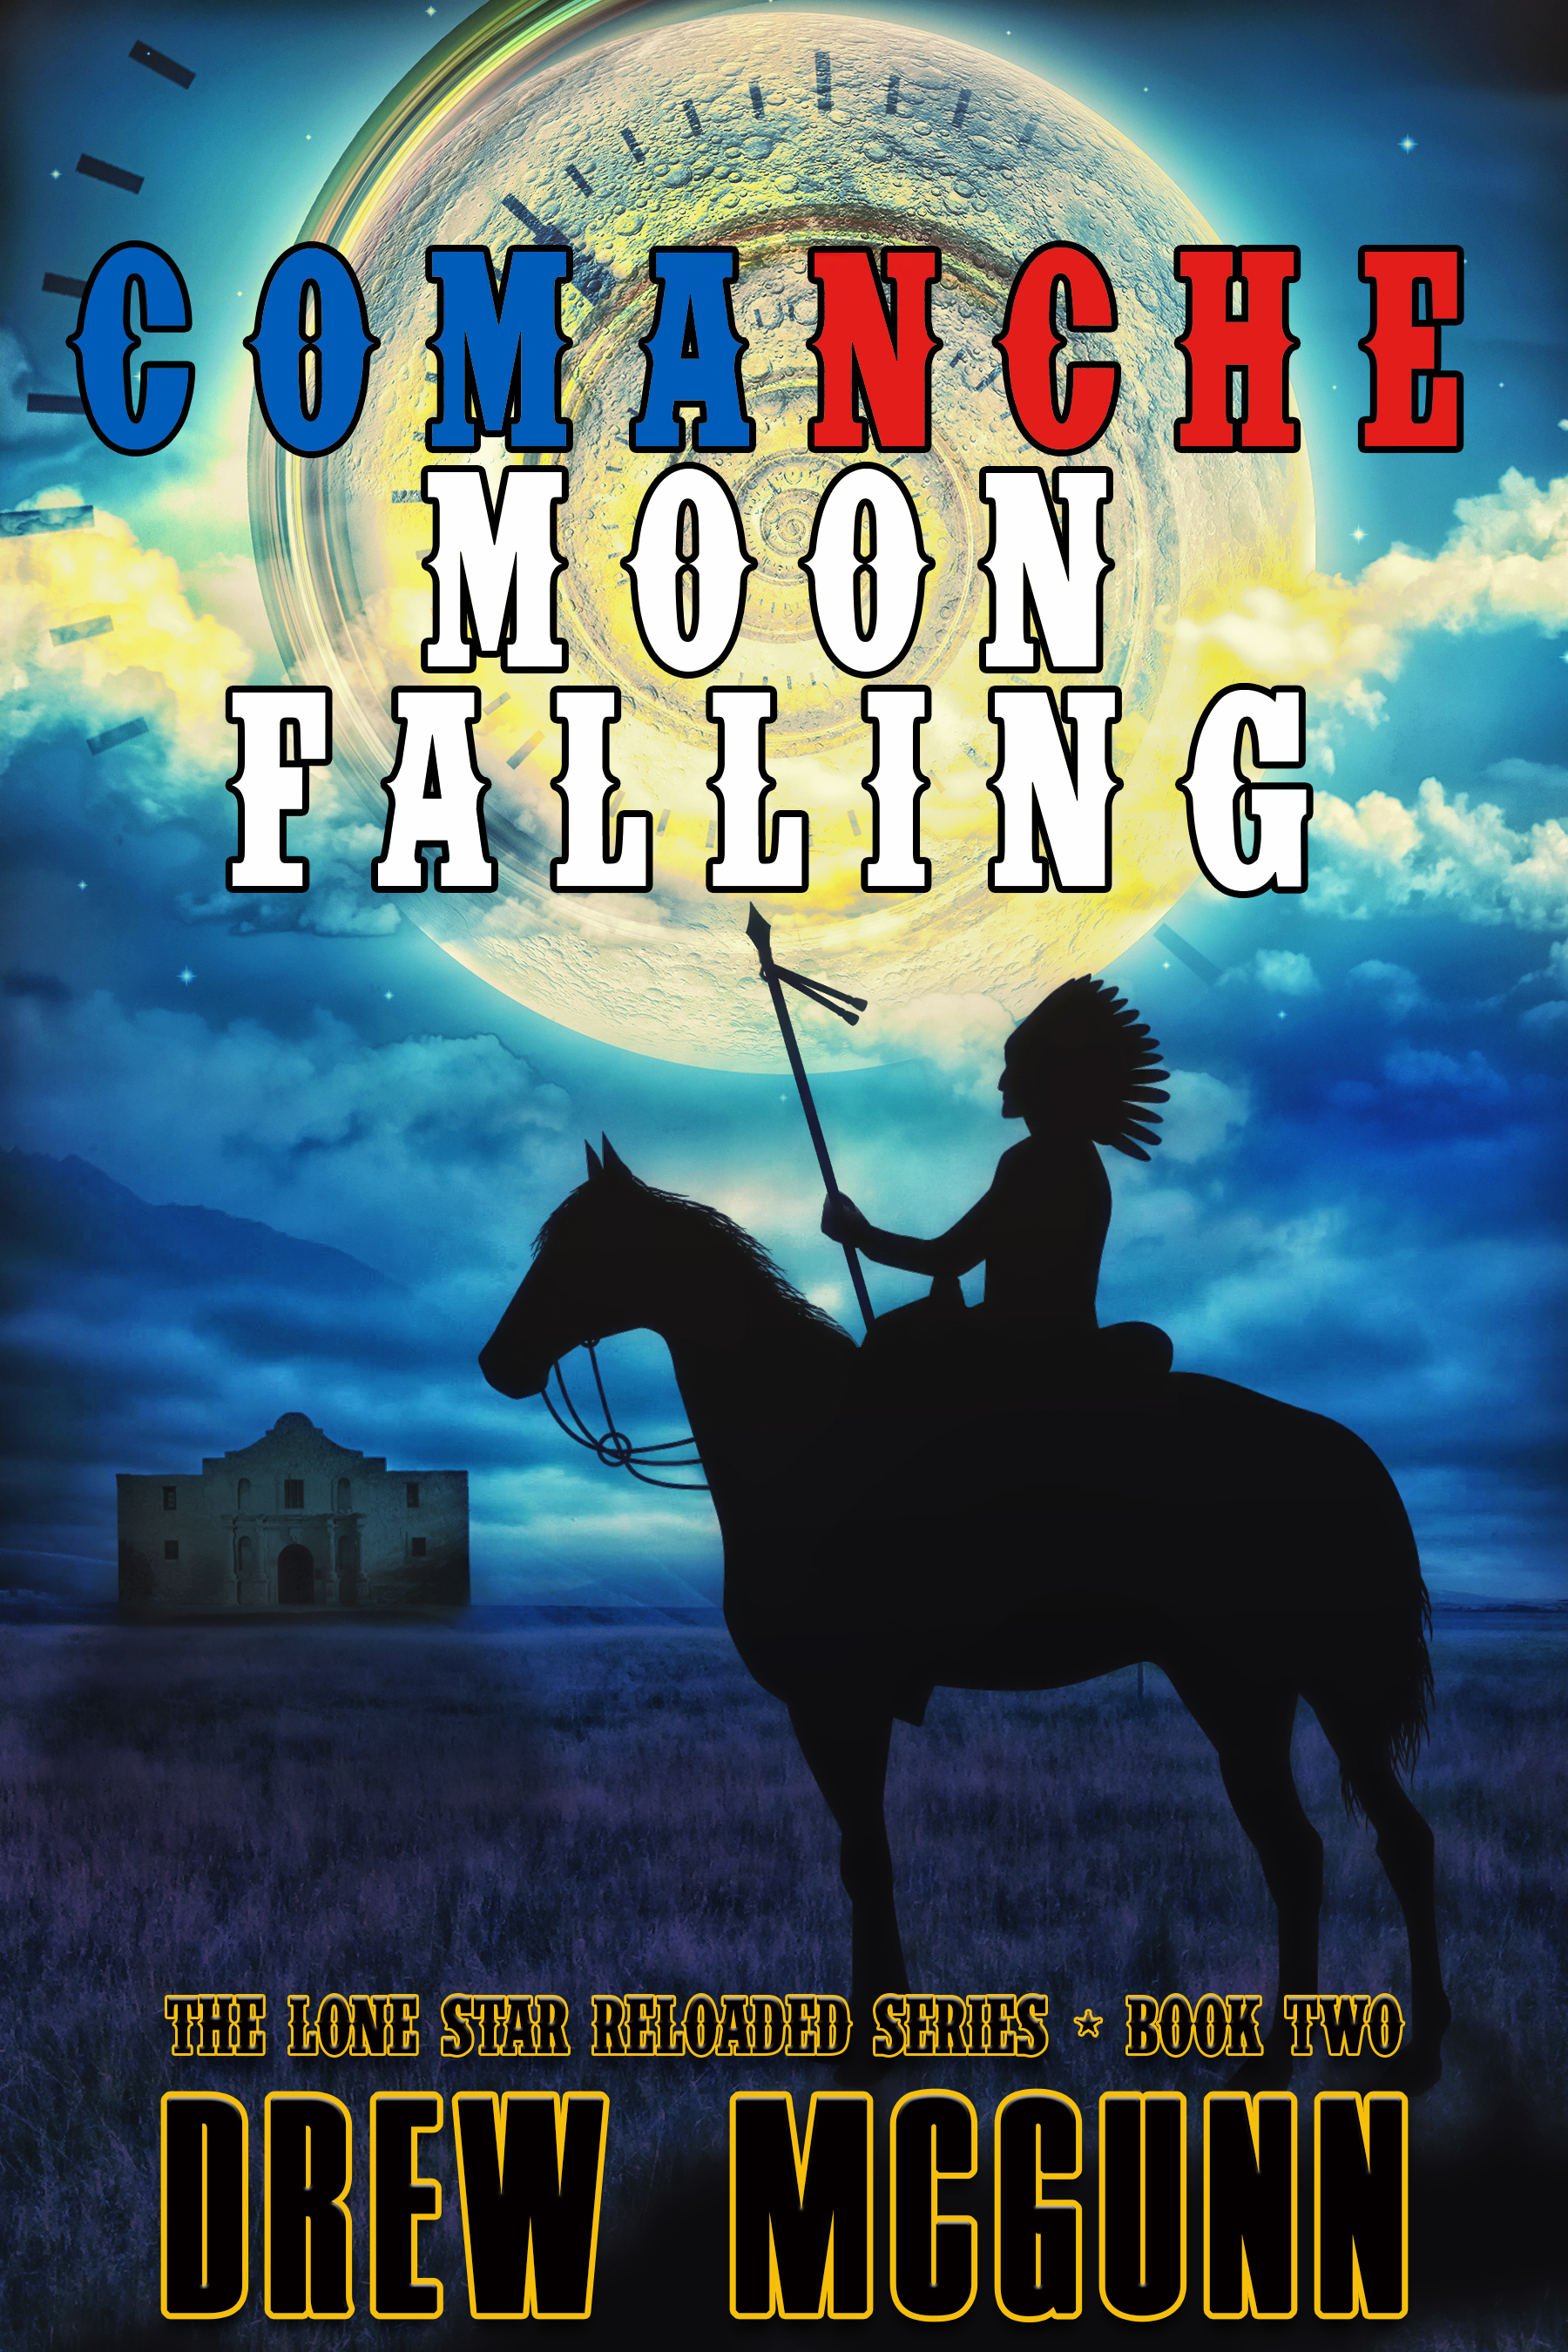 Comanche Moon Falling - Drew McGunn - off center.jpg